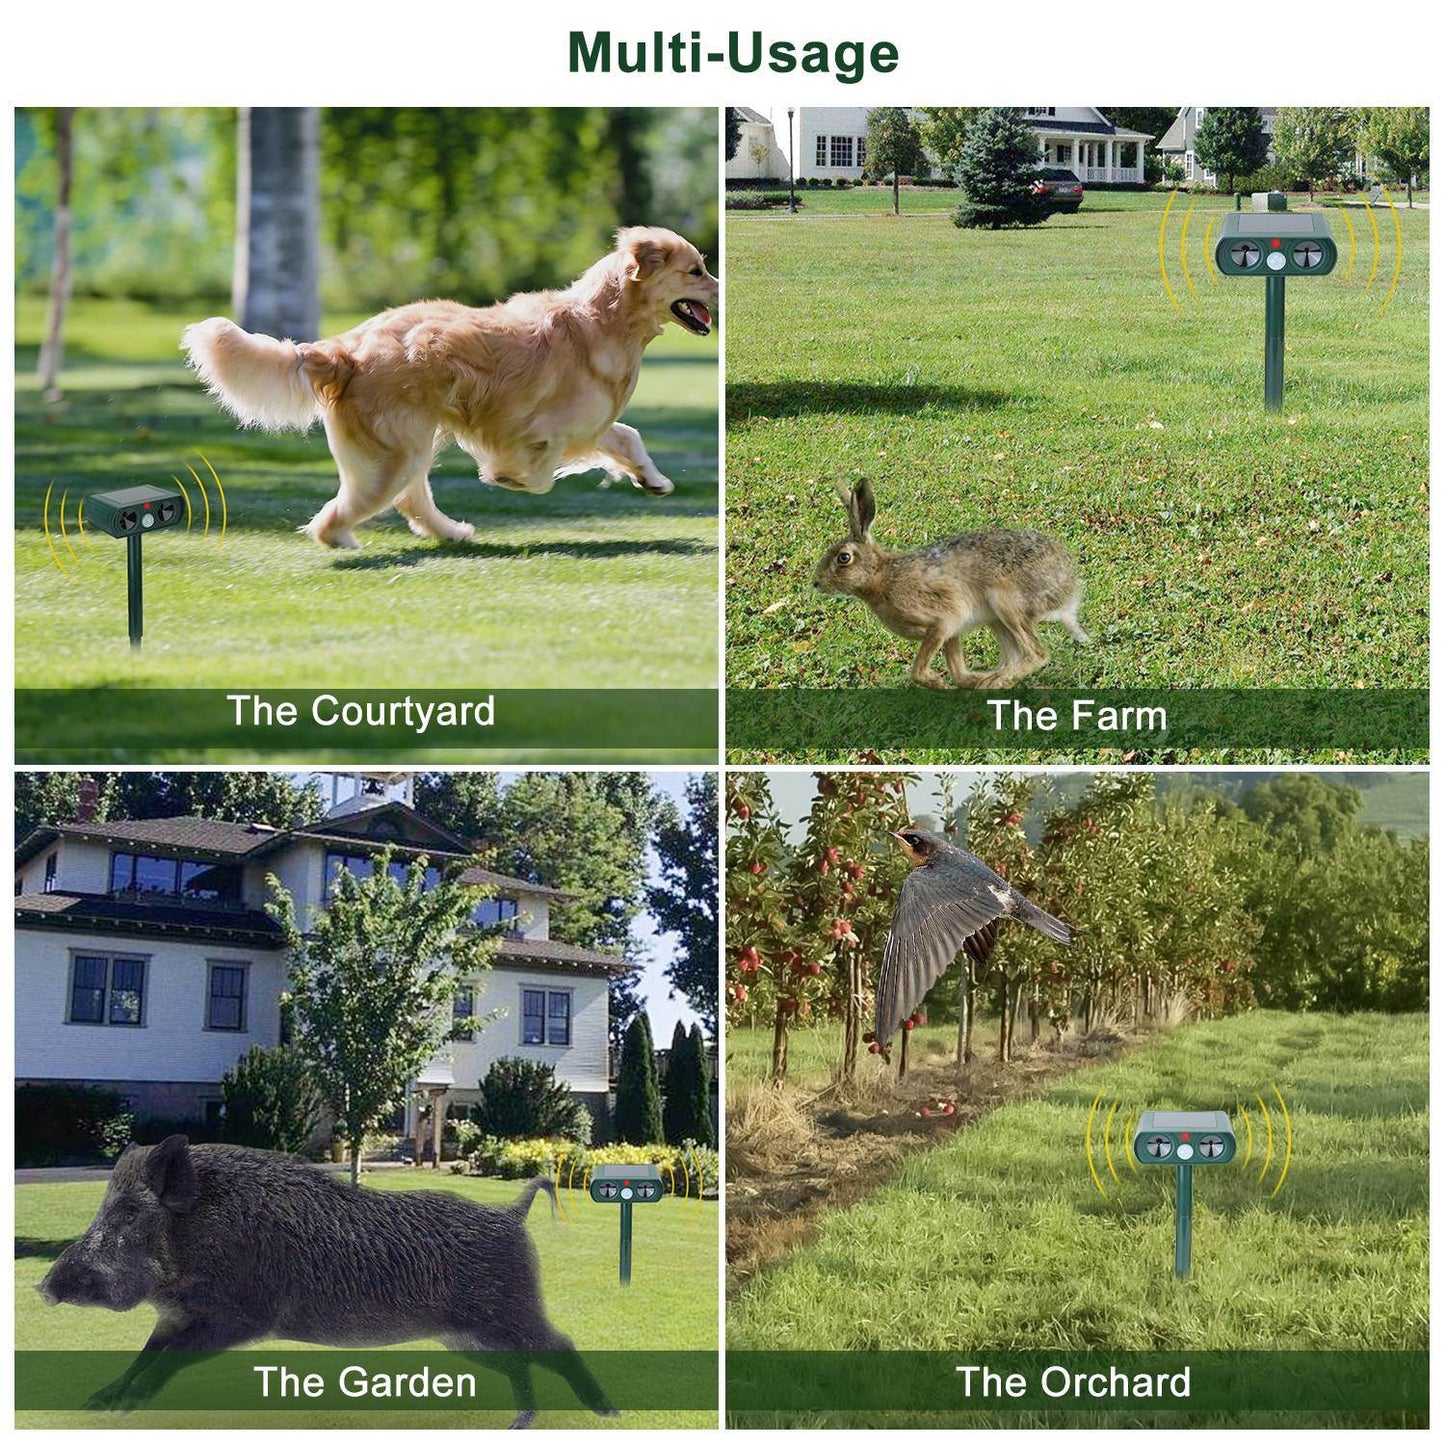 Ultrasonic Animal Repeller Solar Powered Motion Sensor Repellent IPX4 Waterproof Outdoor For Farm Garden Yard Repelling Deer Raccoon Cat Dog Rabbit Squirrel Bird